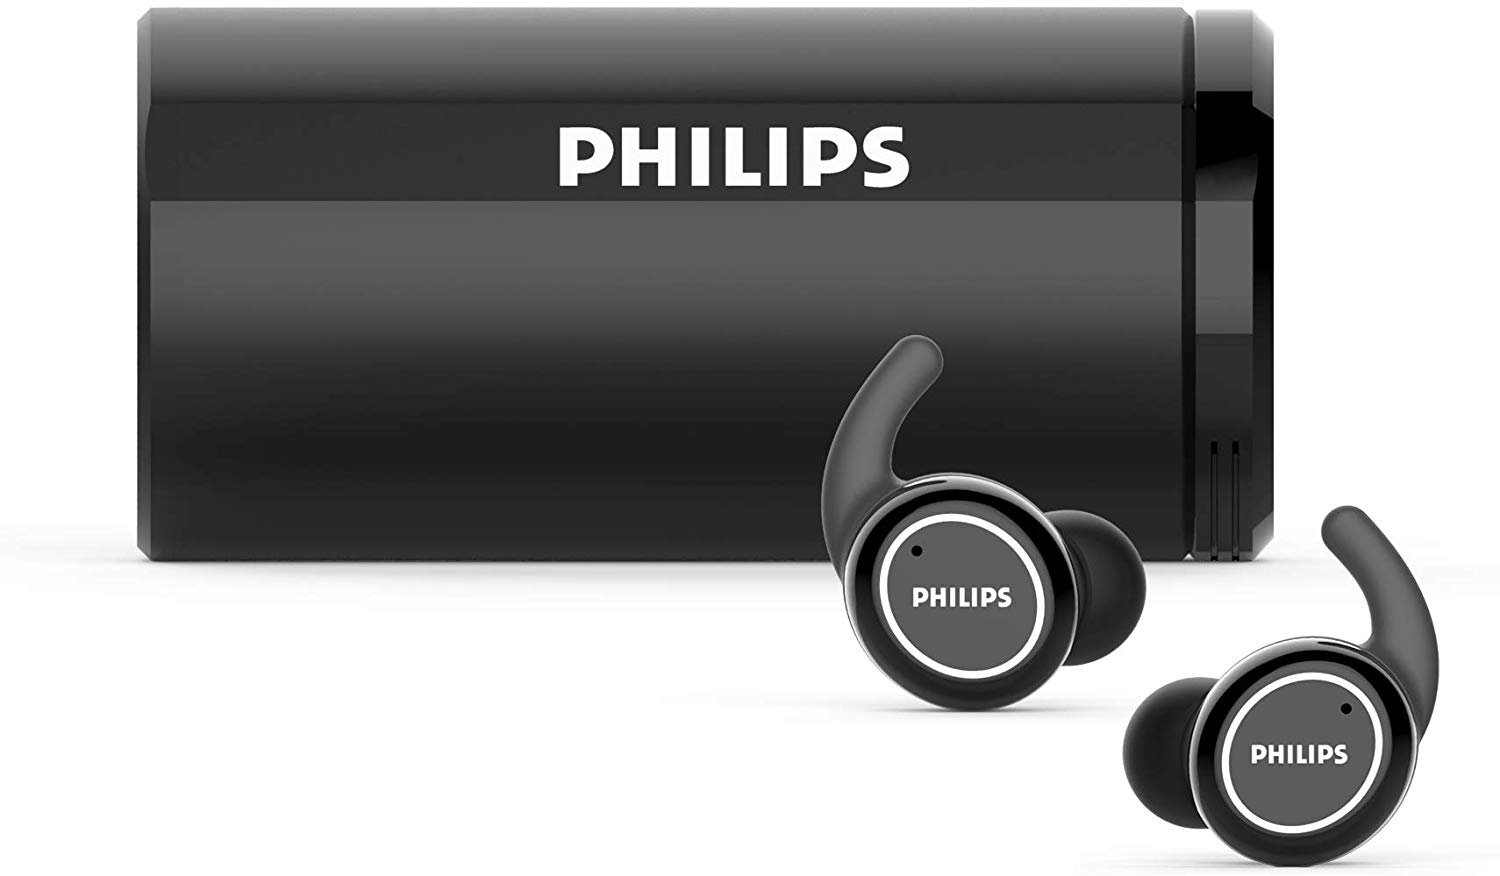 Casti audio philips wireless intraauriculare cu bluetooth 5.0, difuzoare 6 mm, autonomie 6 ore, control volum, gestionare apel, sensibilitate 94 db, negru